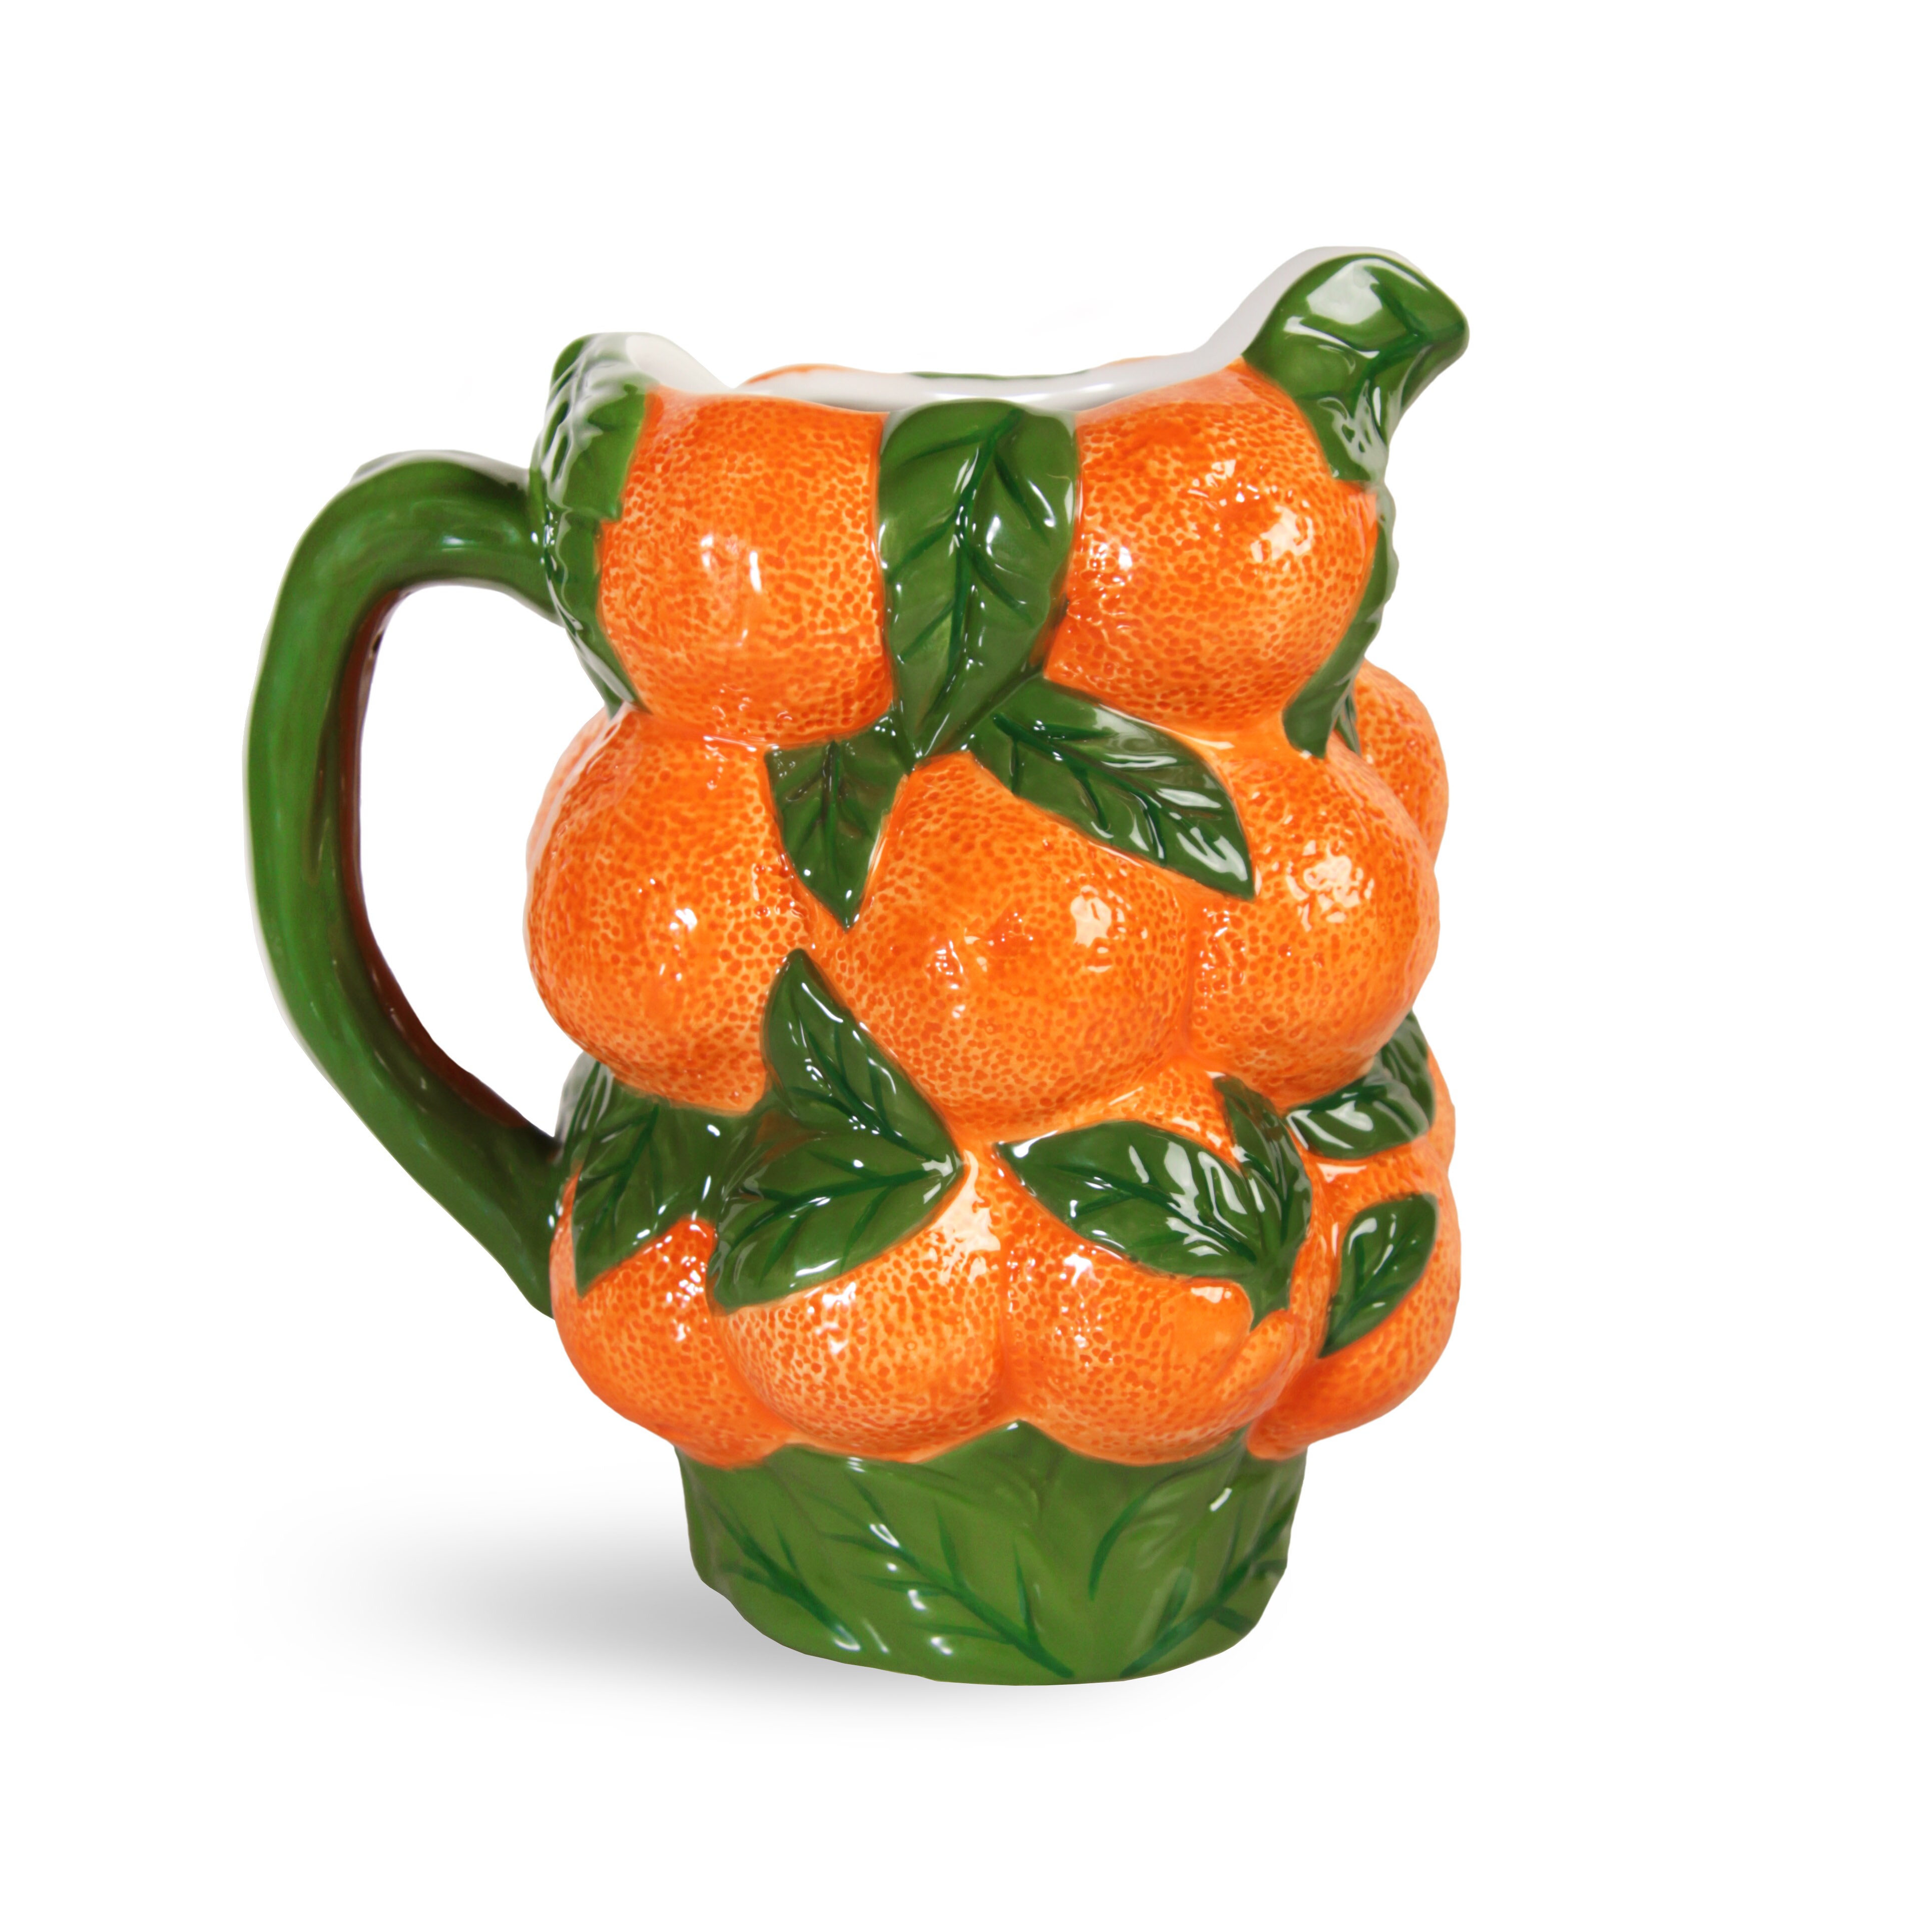 Squeezy orange - Kanna i keramik